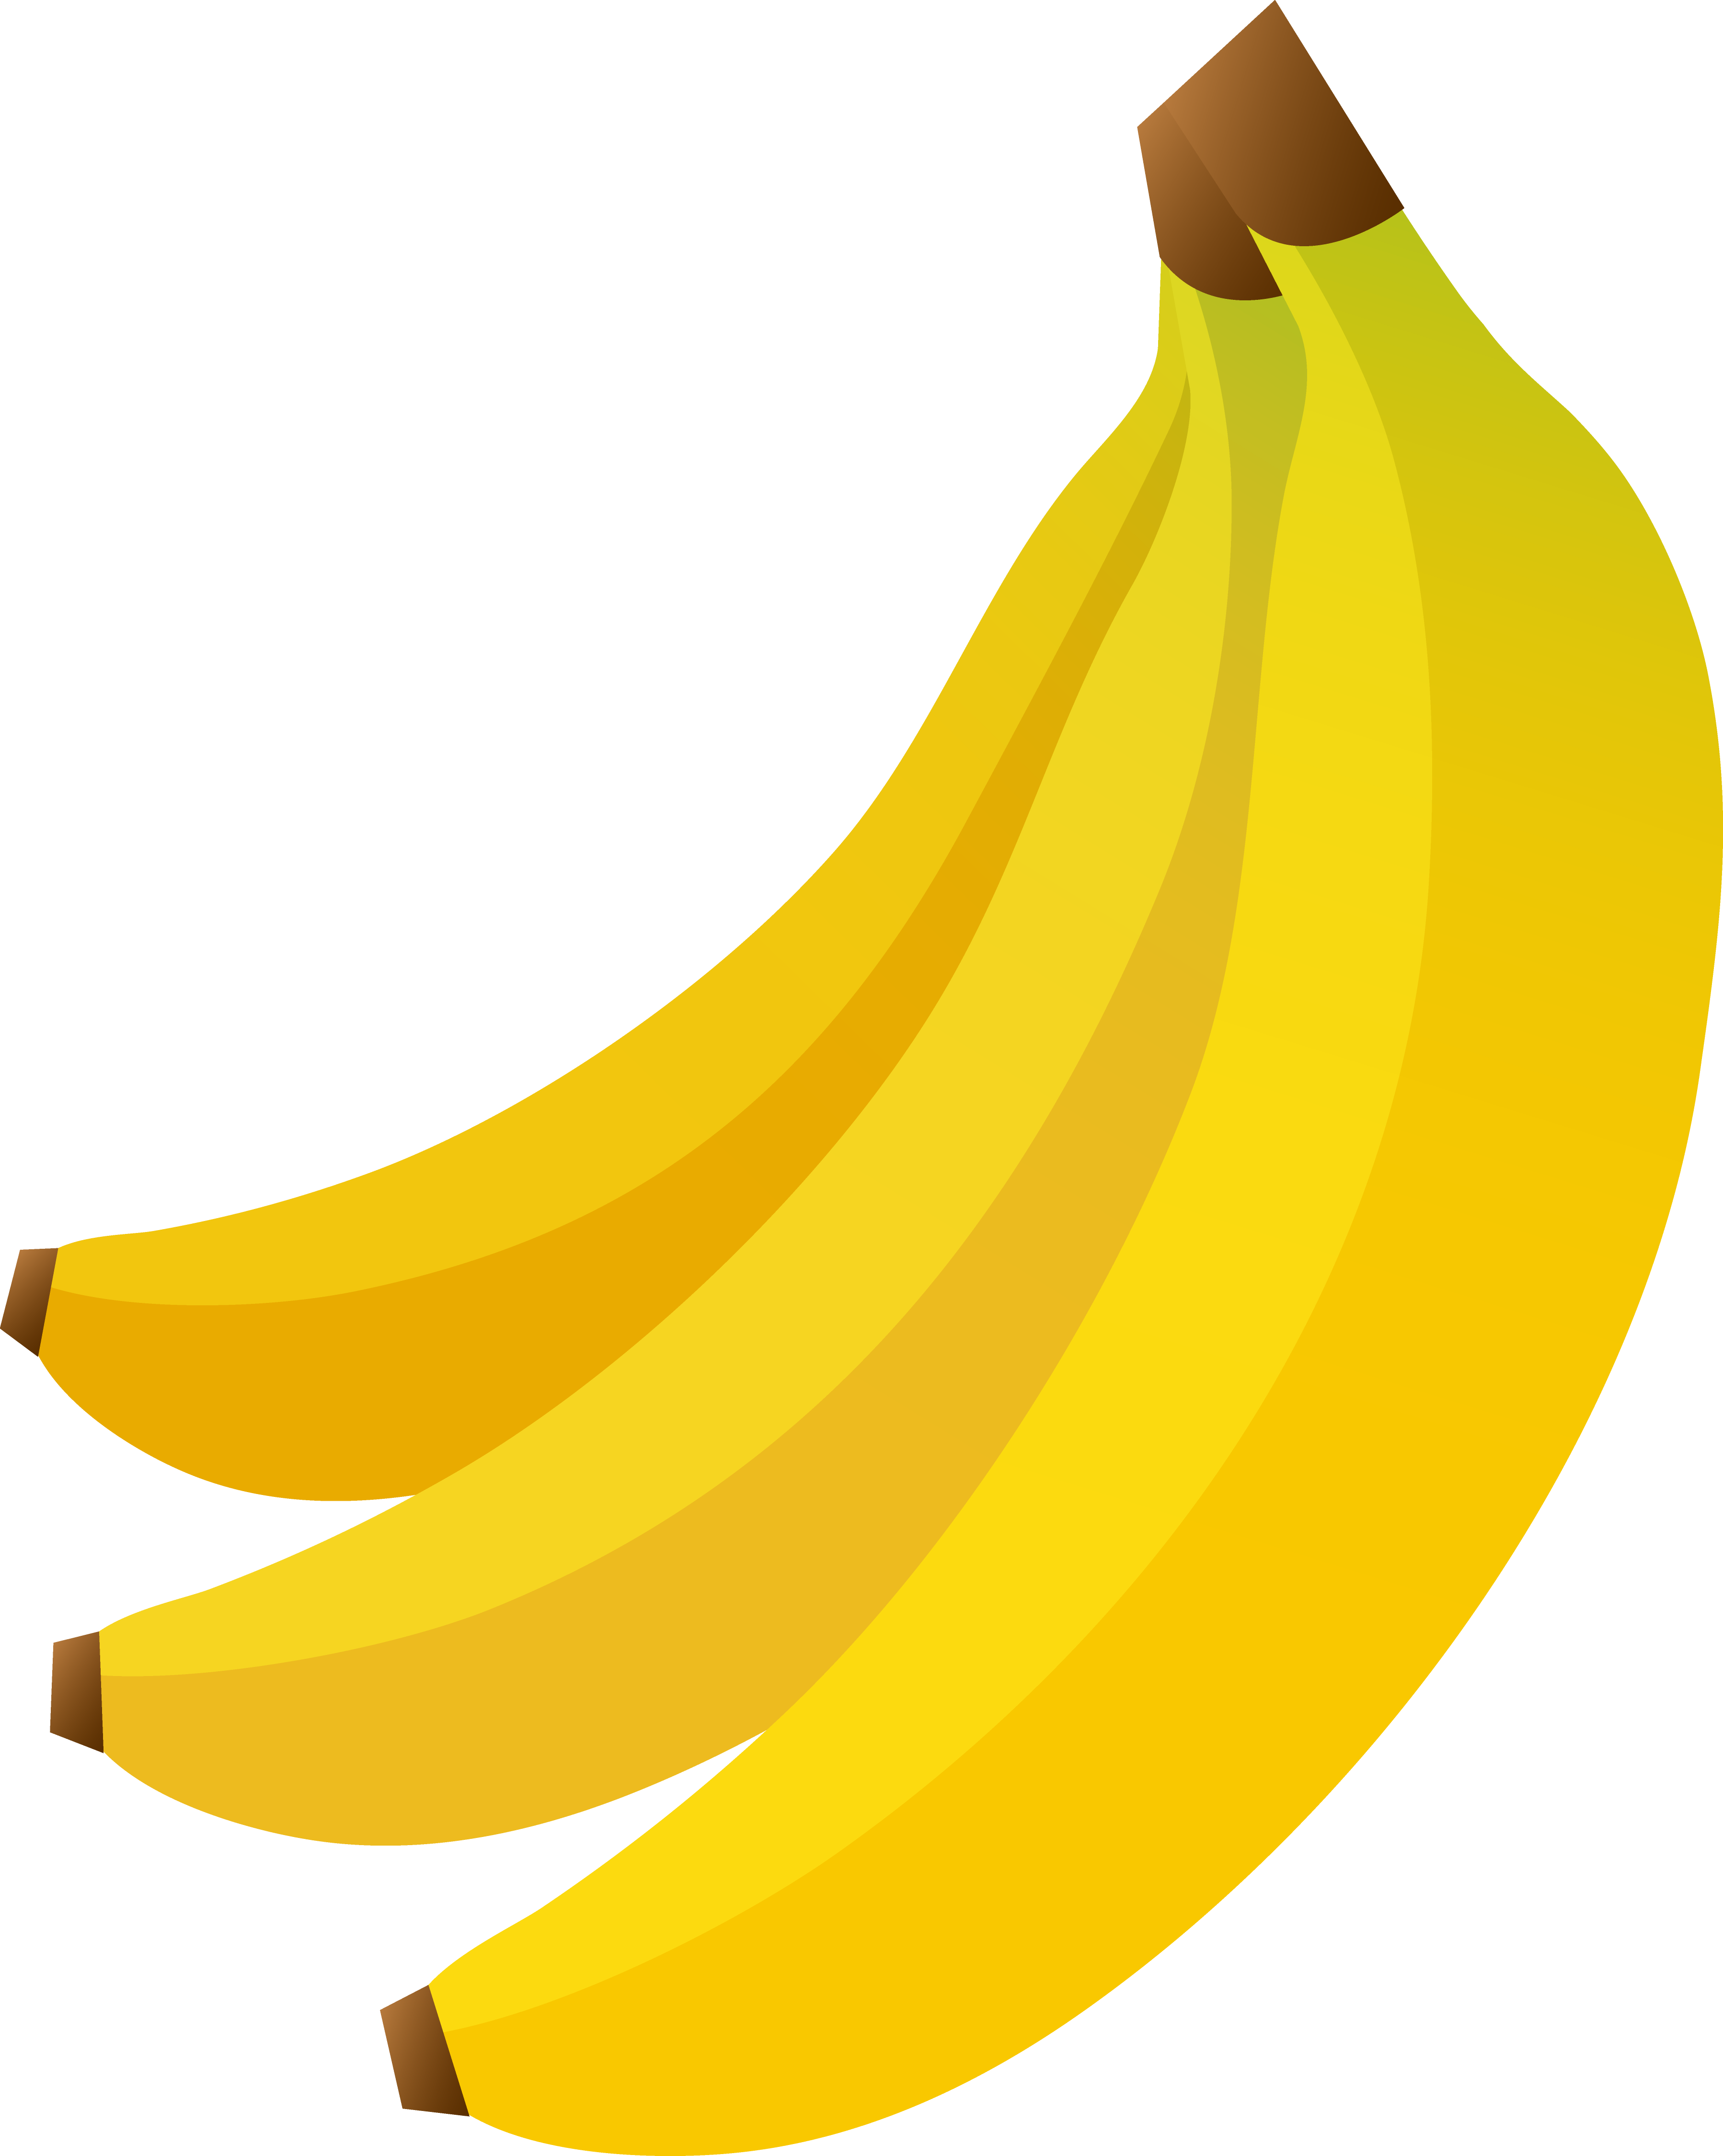 Banana clipart - Clipartix